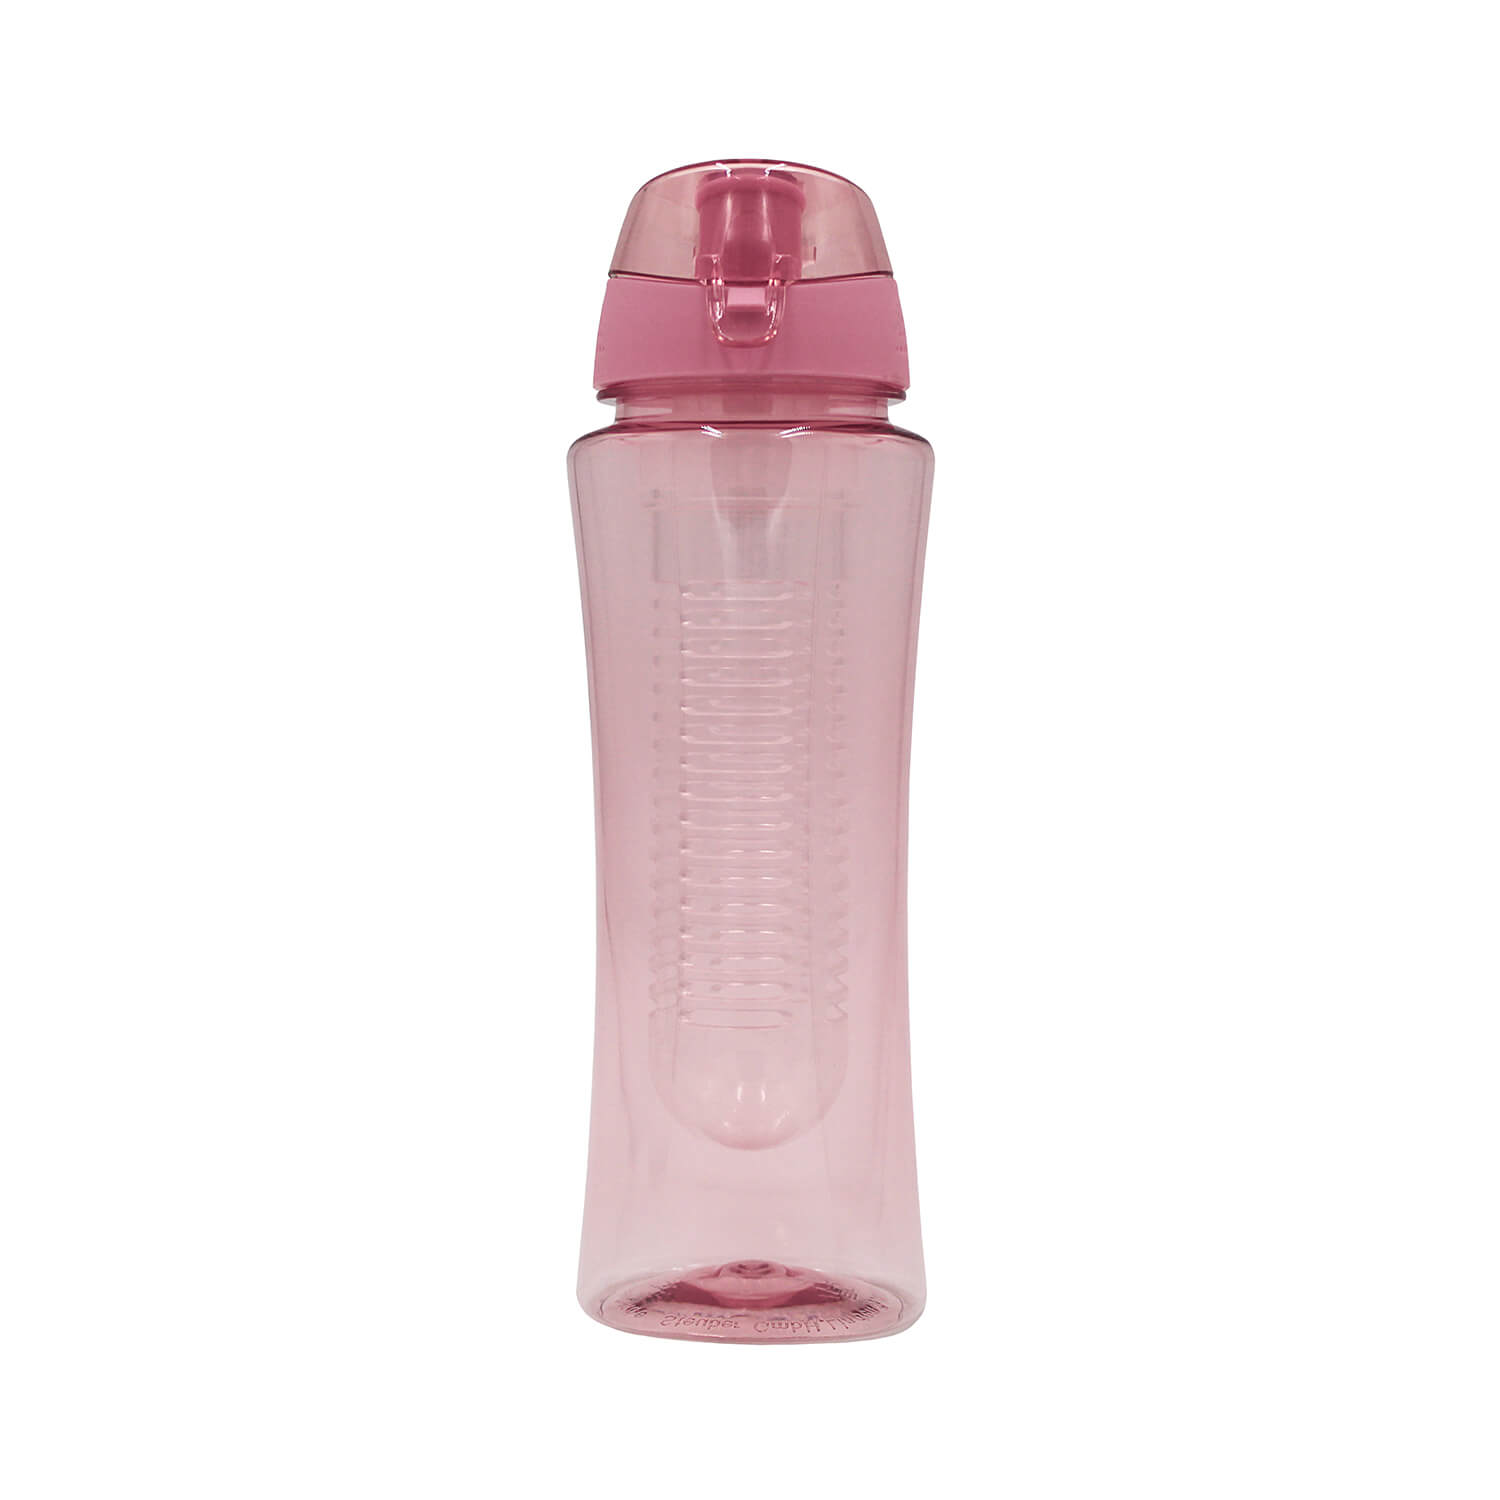 Steuber Trinkflasche Flavour für Sport & Freizeit mit Filtereinsatz, Schraubverschluss und Tragelasche, 700ml, rosa